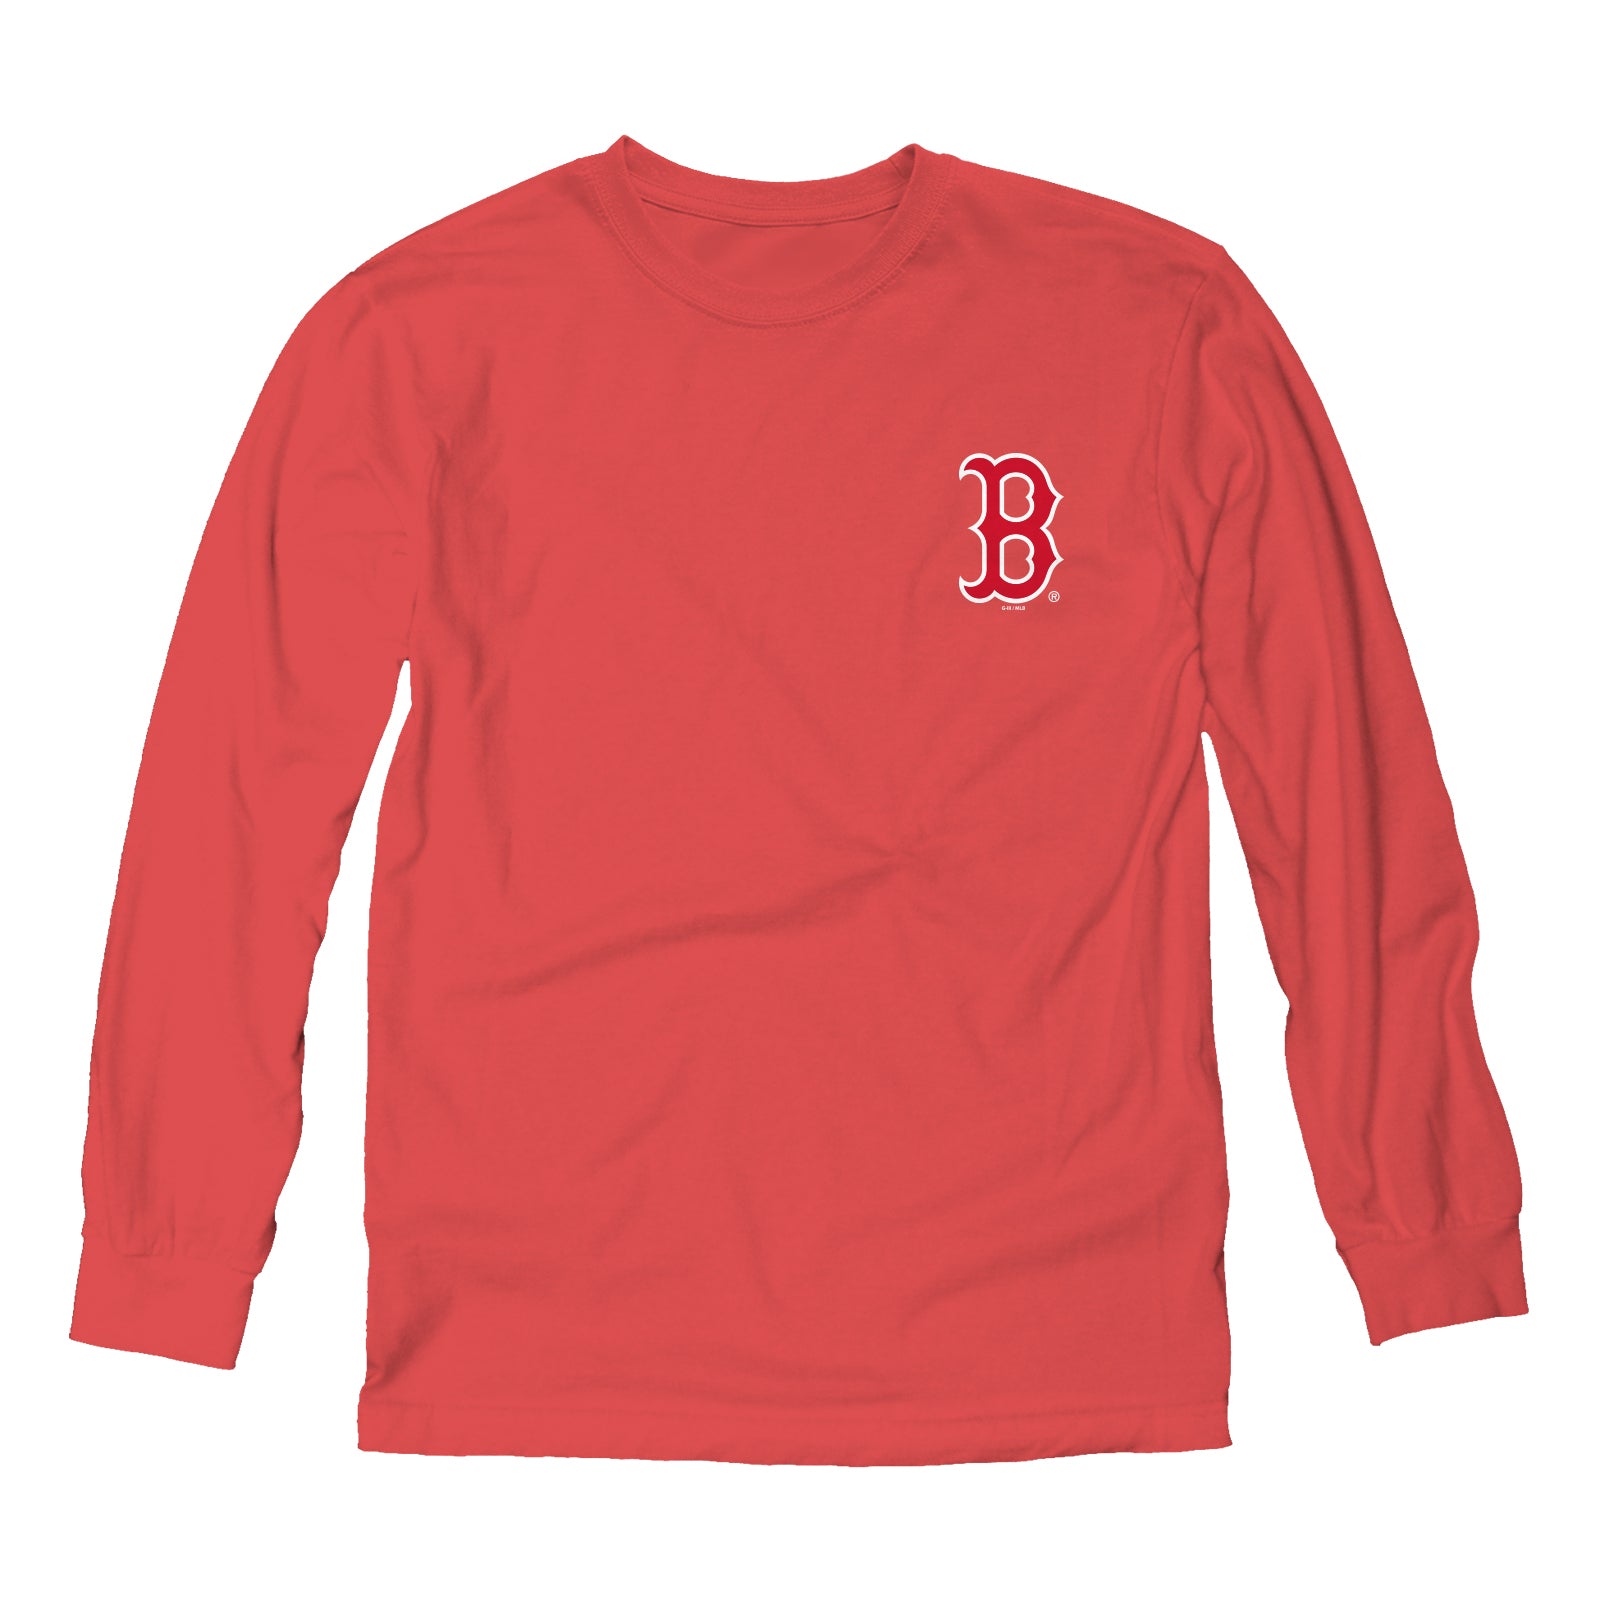 boston b shirt